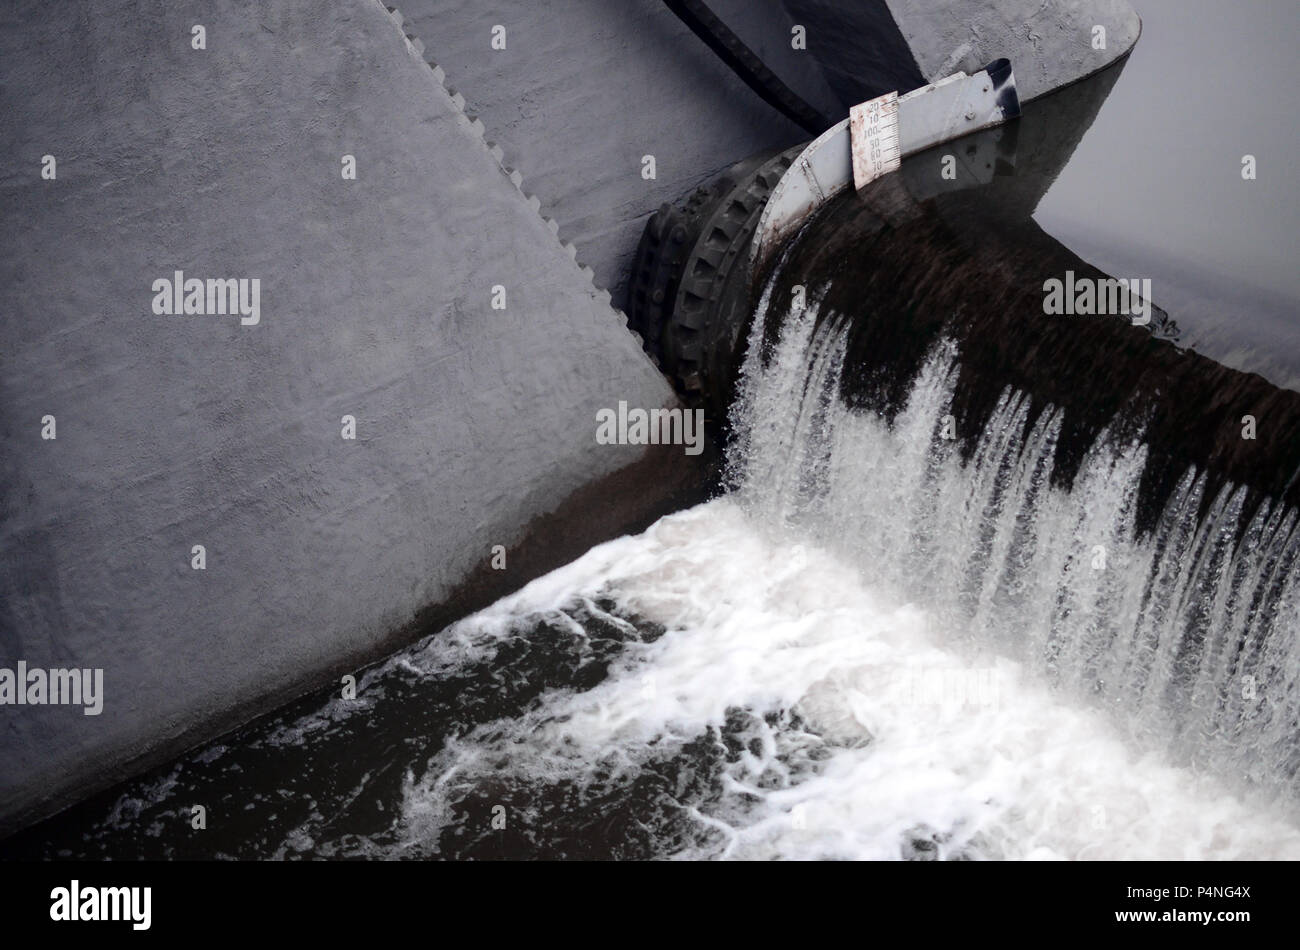 Un'immagine dell'acqua che scorre. La diga è progettata per regolare il livello di acqua nei fiumi entro la città e di fornire assistenza tecnica di acqua per uso industriale Foto Stock